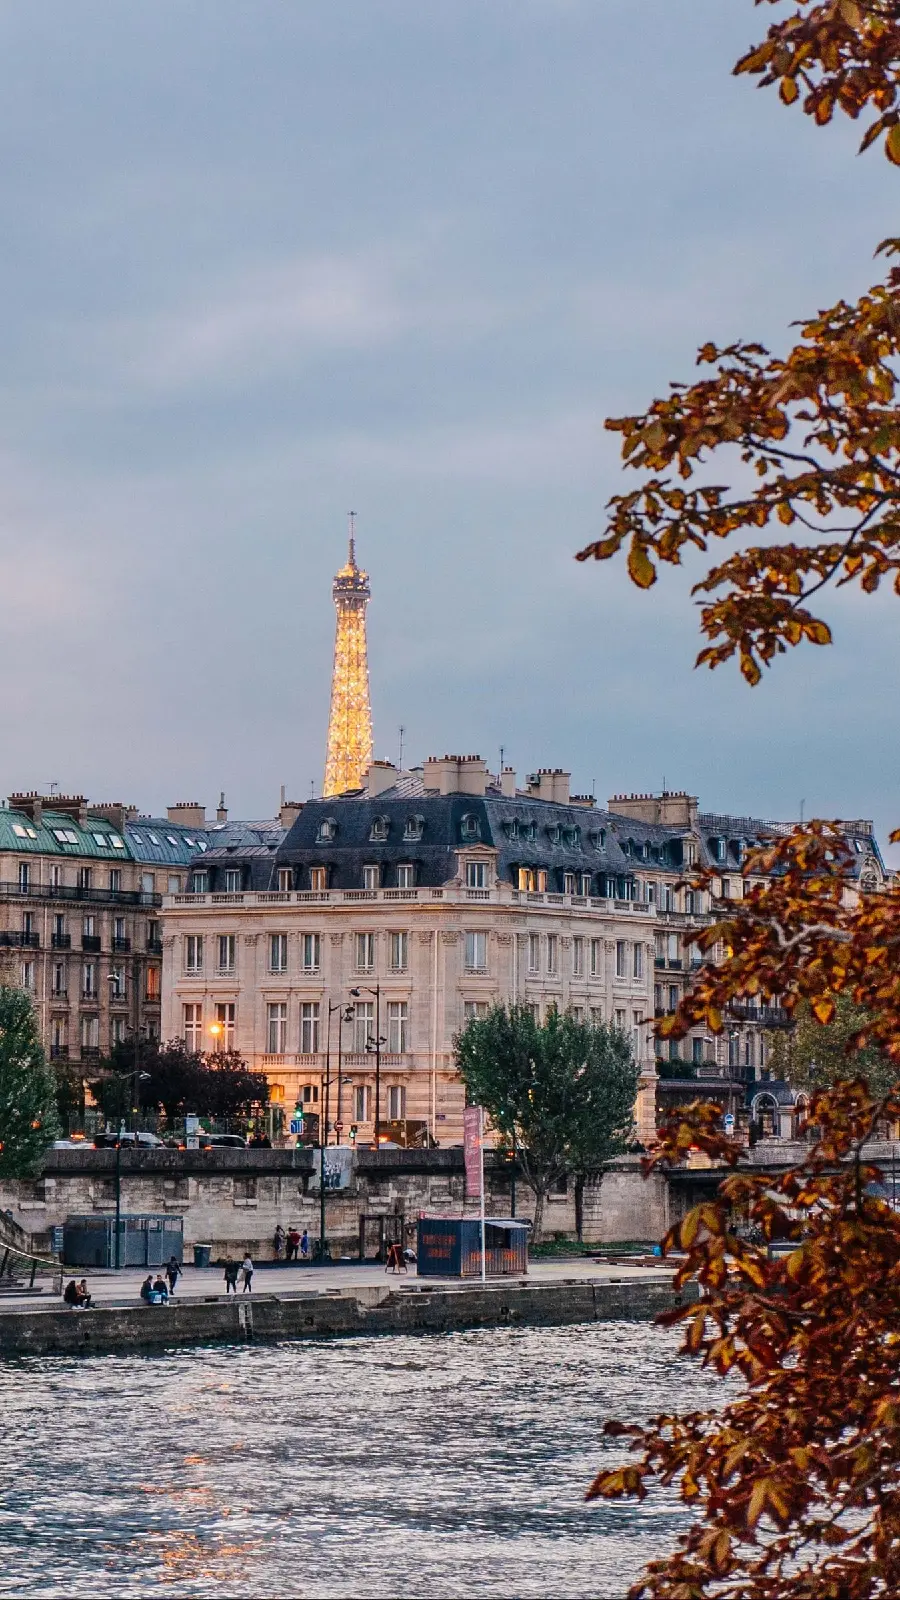 عکس واقعی شهر های فرانسه با معماری کلاسیک معروف 2023